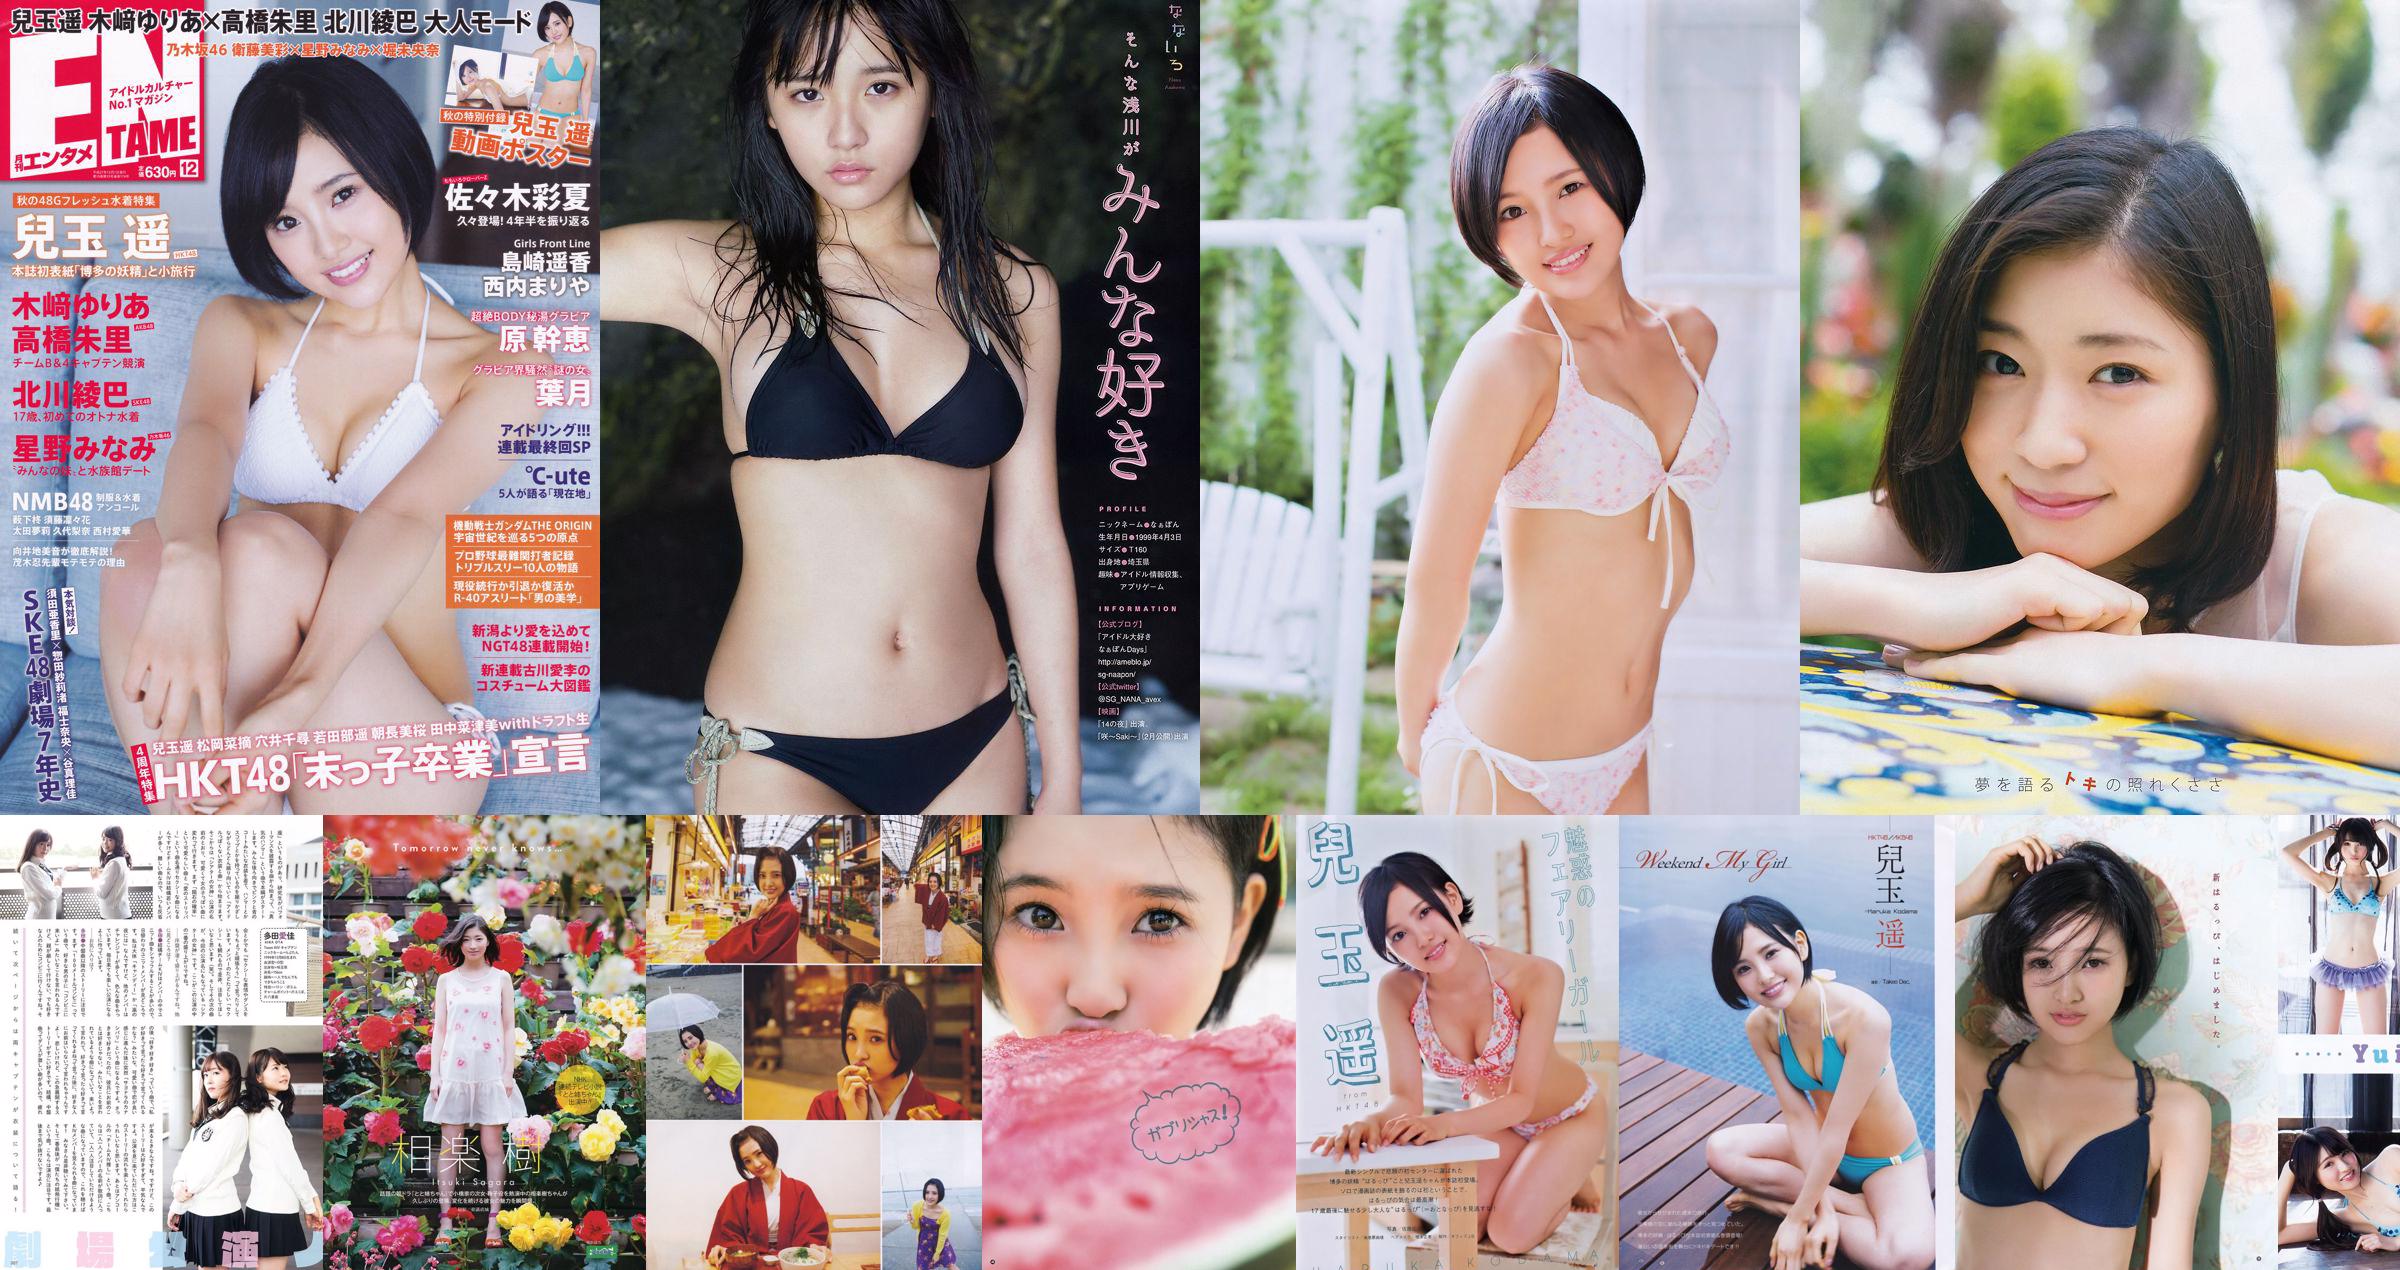 [Манга Экшн] Кодама Харука Мияваки Сакура 2015 No.09 Photo Magazine No.84c7c7 Страница 2